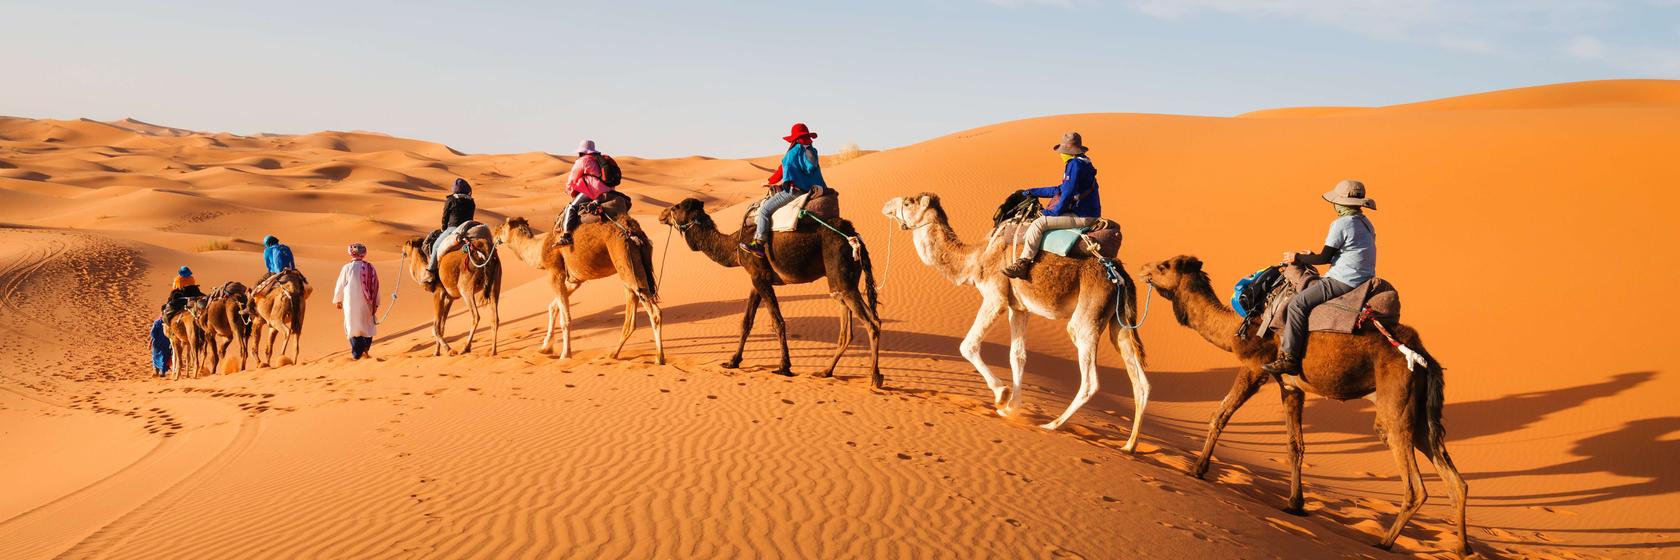 Kde výhodně nakoupit v Maroku